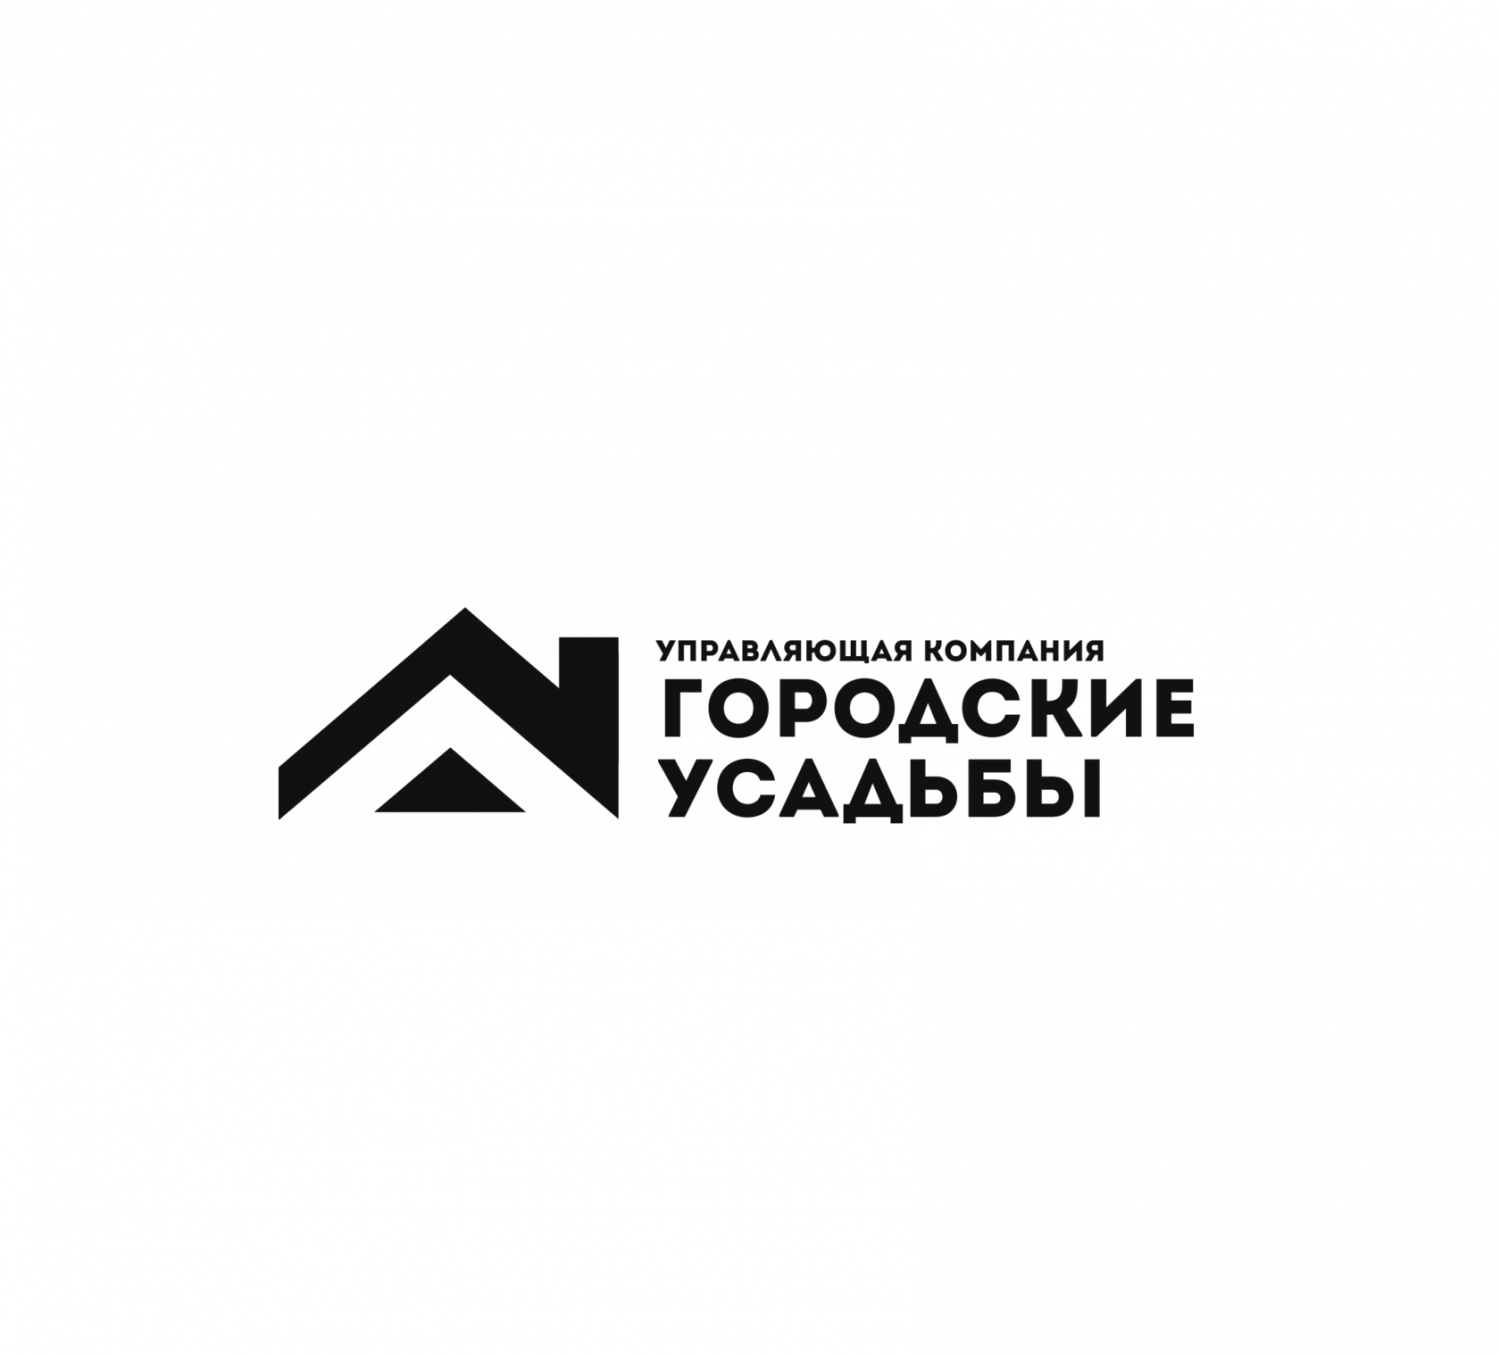 Логотип УК Городские усадьбы